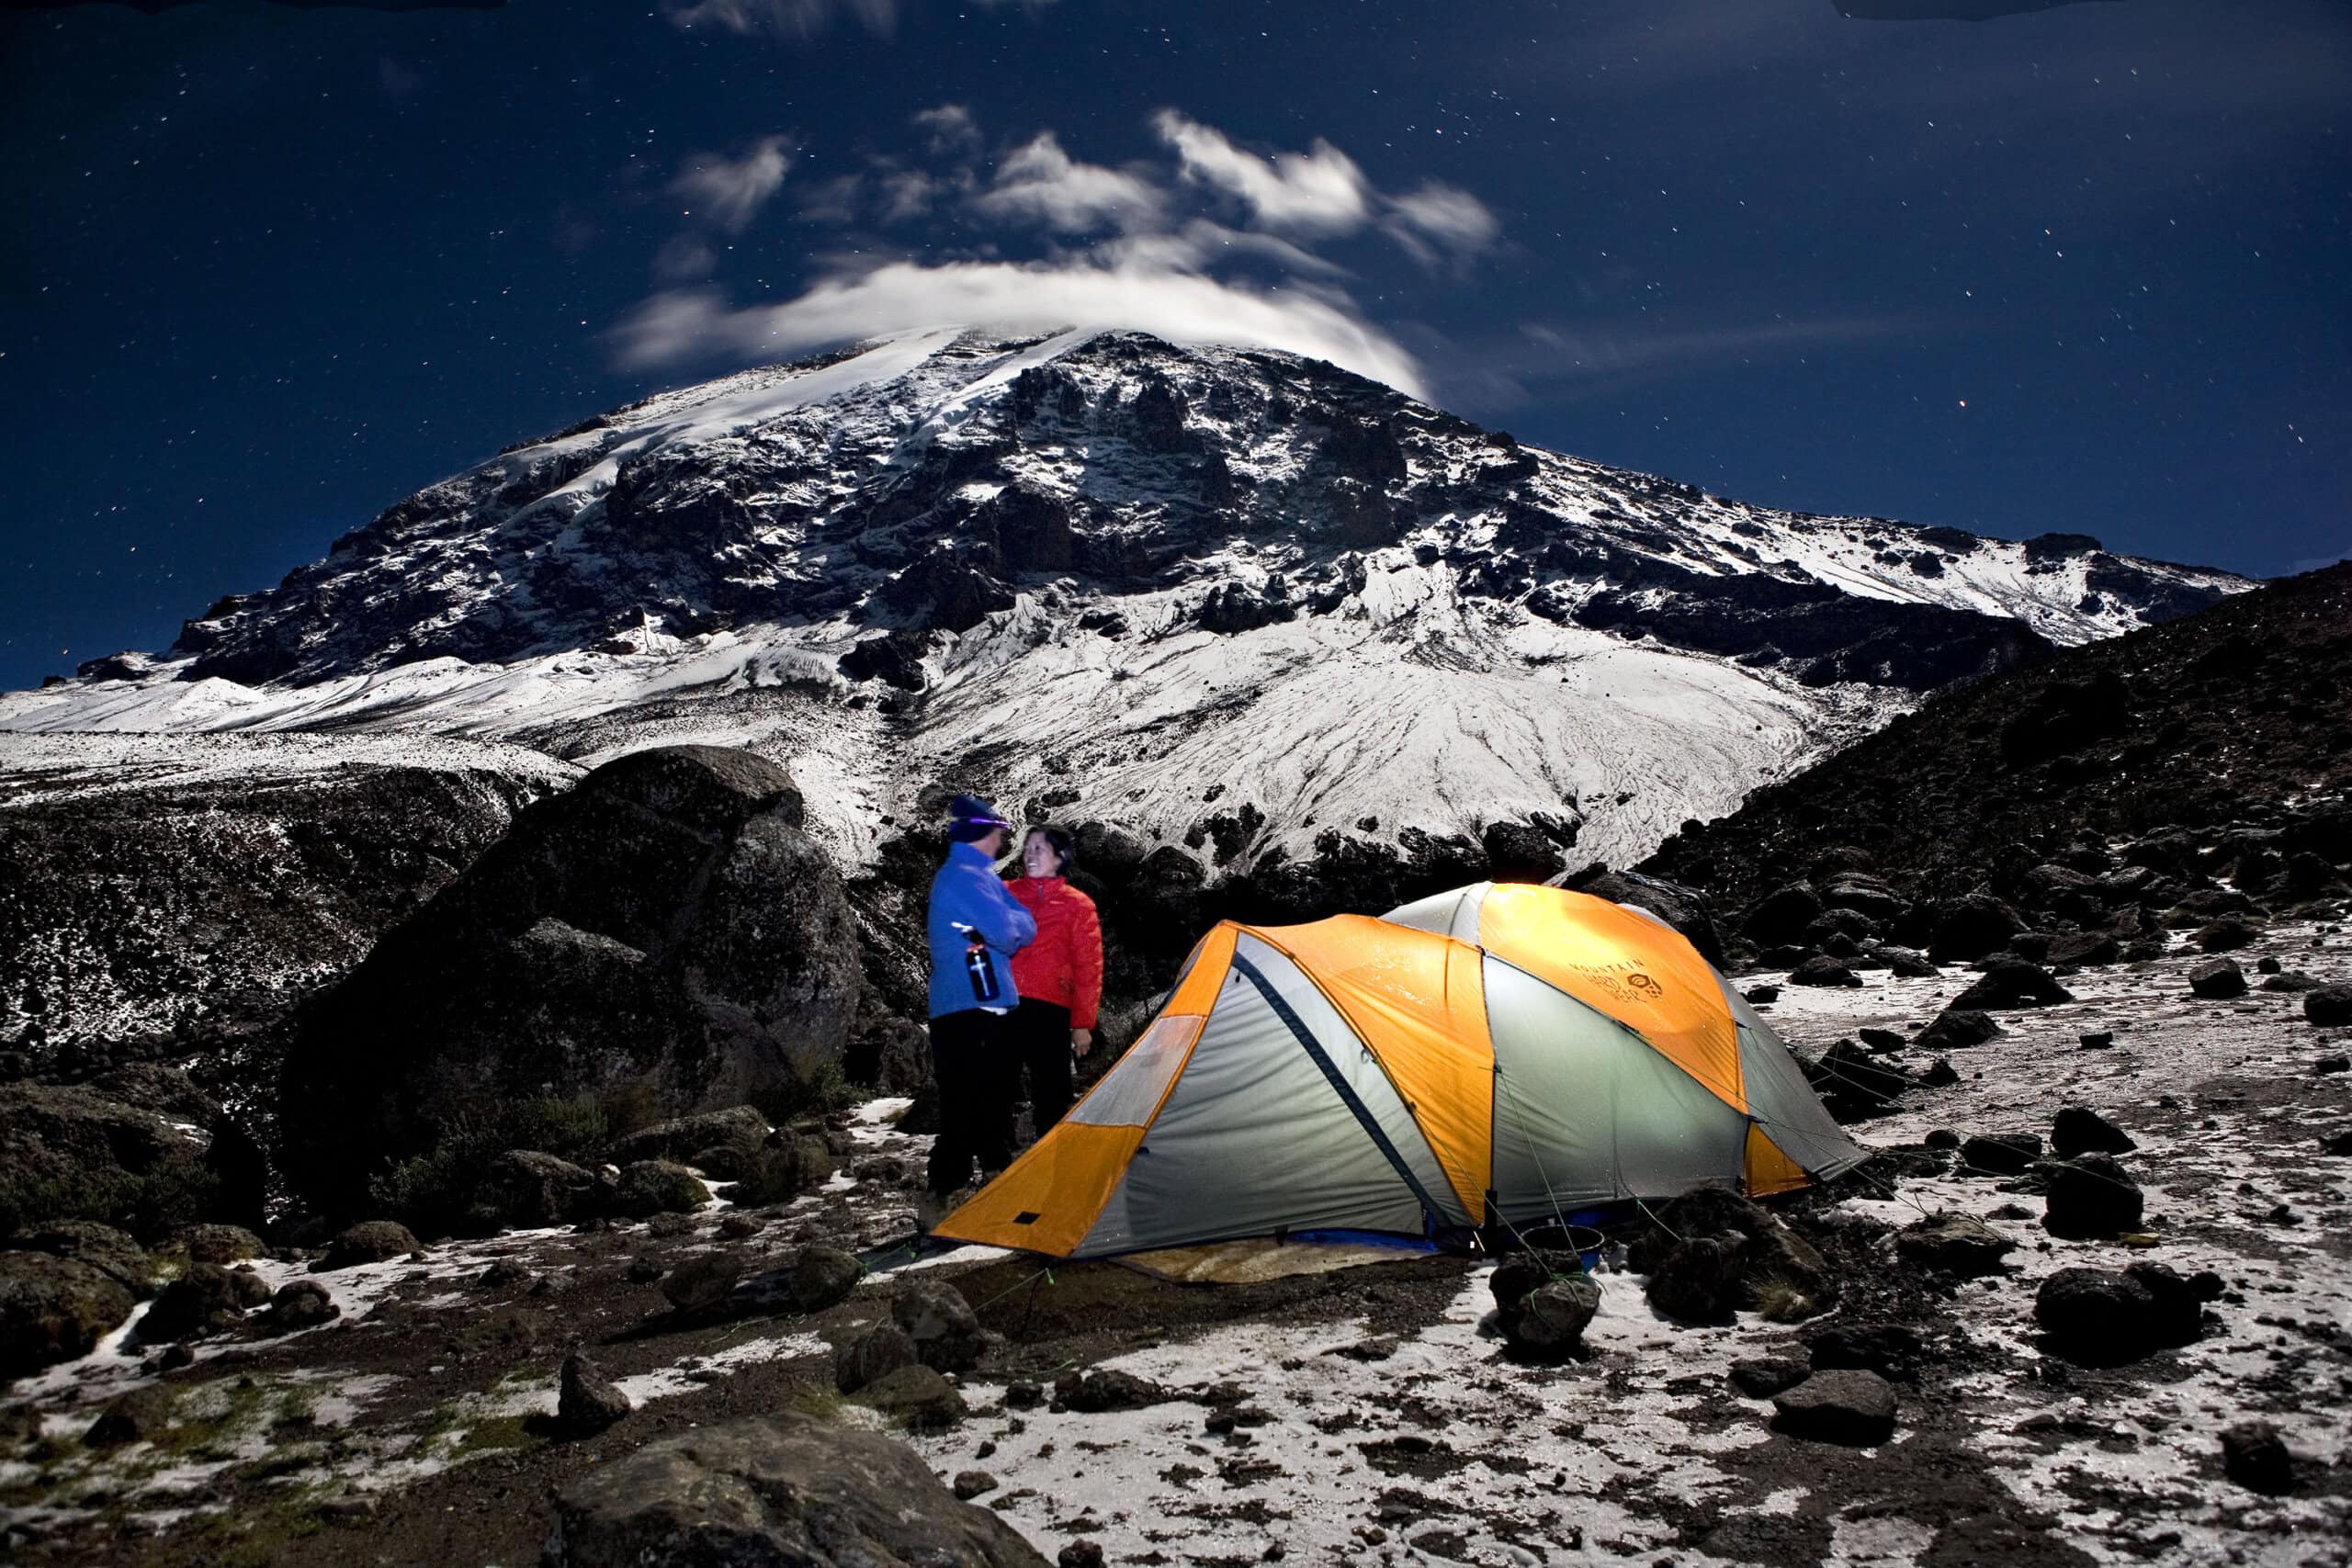 Do I Need Trekking Poles to Climb Kilimanjaro?